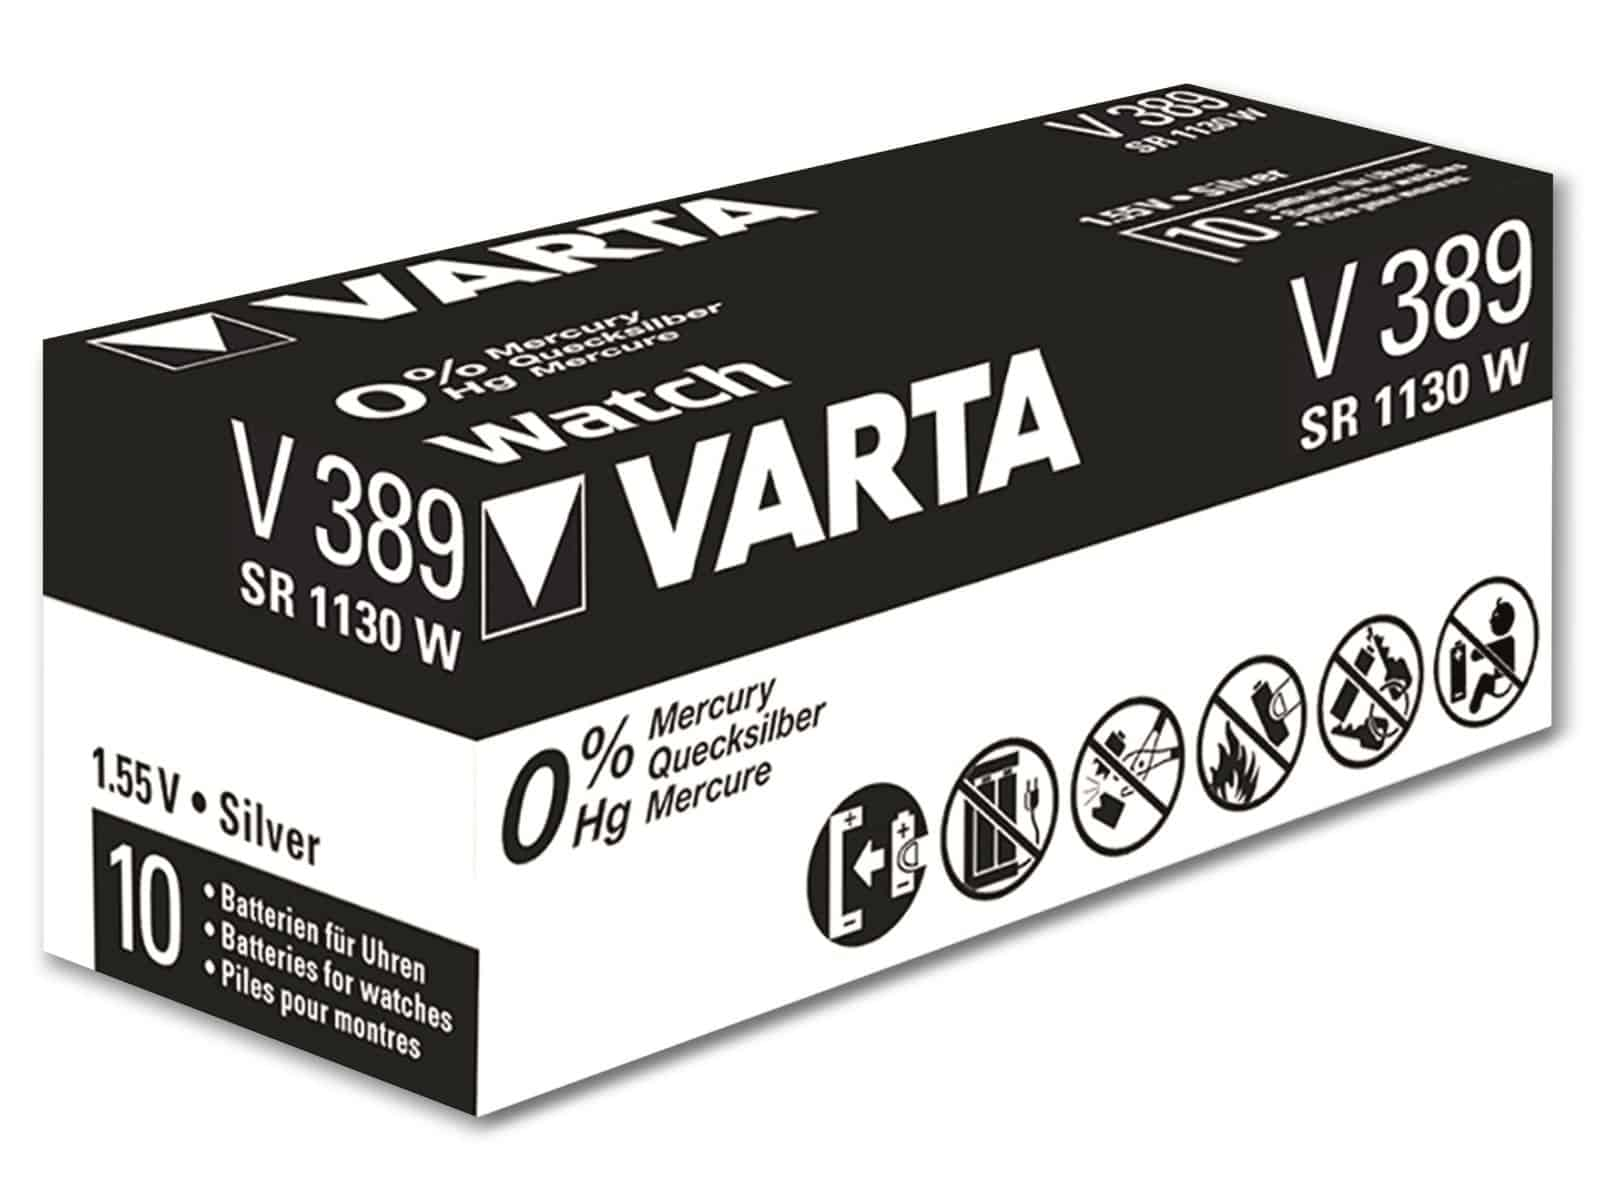 VARTA Knopfzelle 1.55V, Silver Silberoxid 10 SR54, Oxide, Stück 389 Knopfzelle